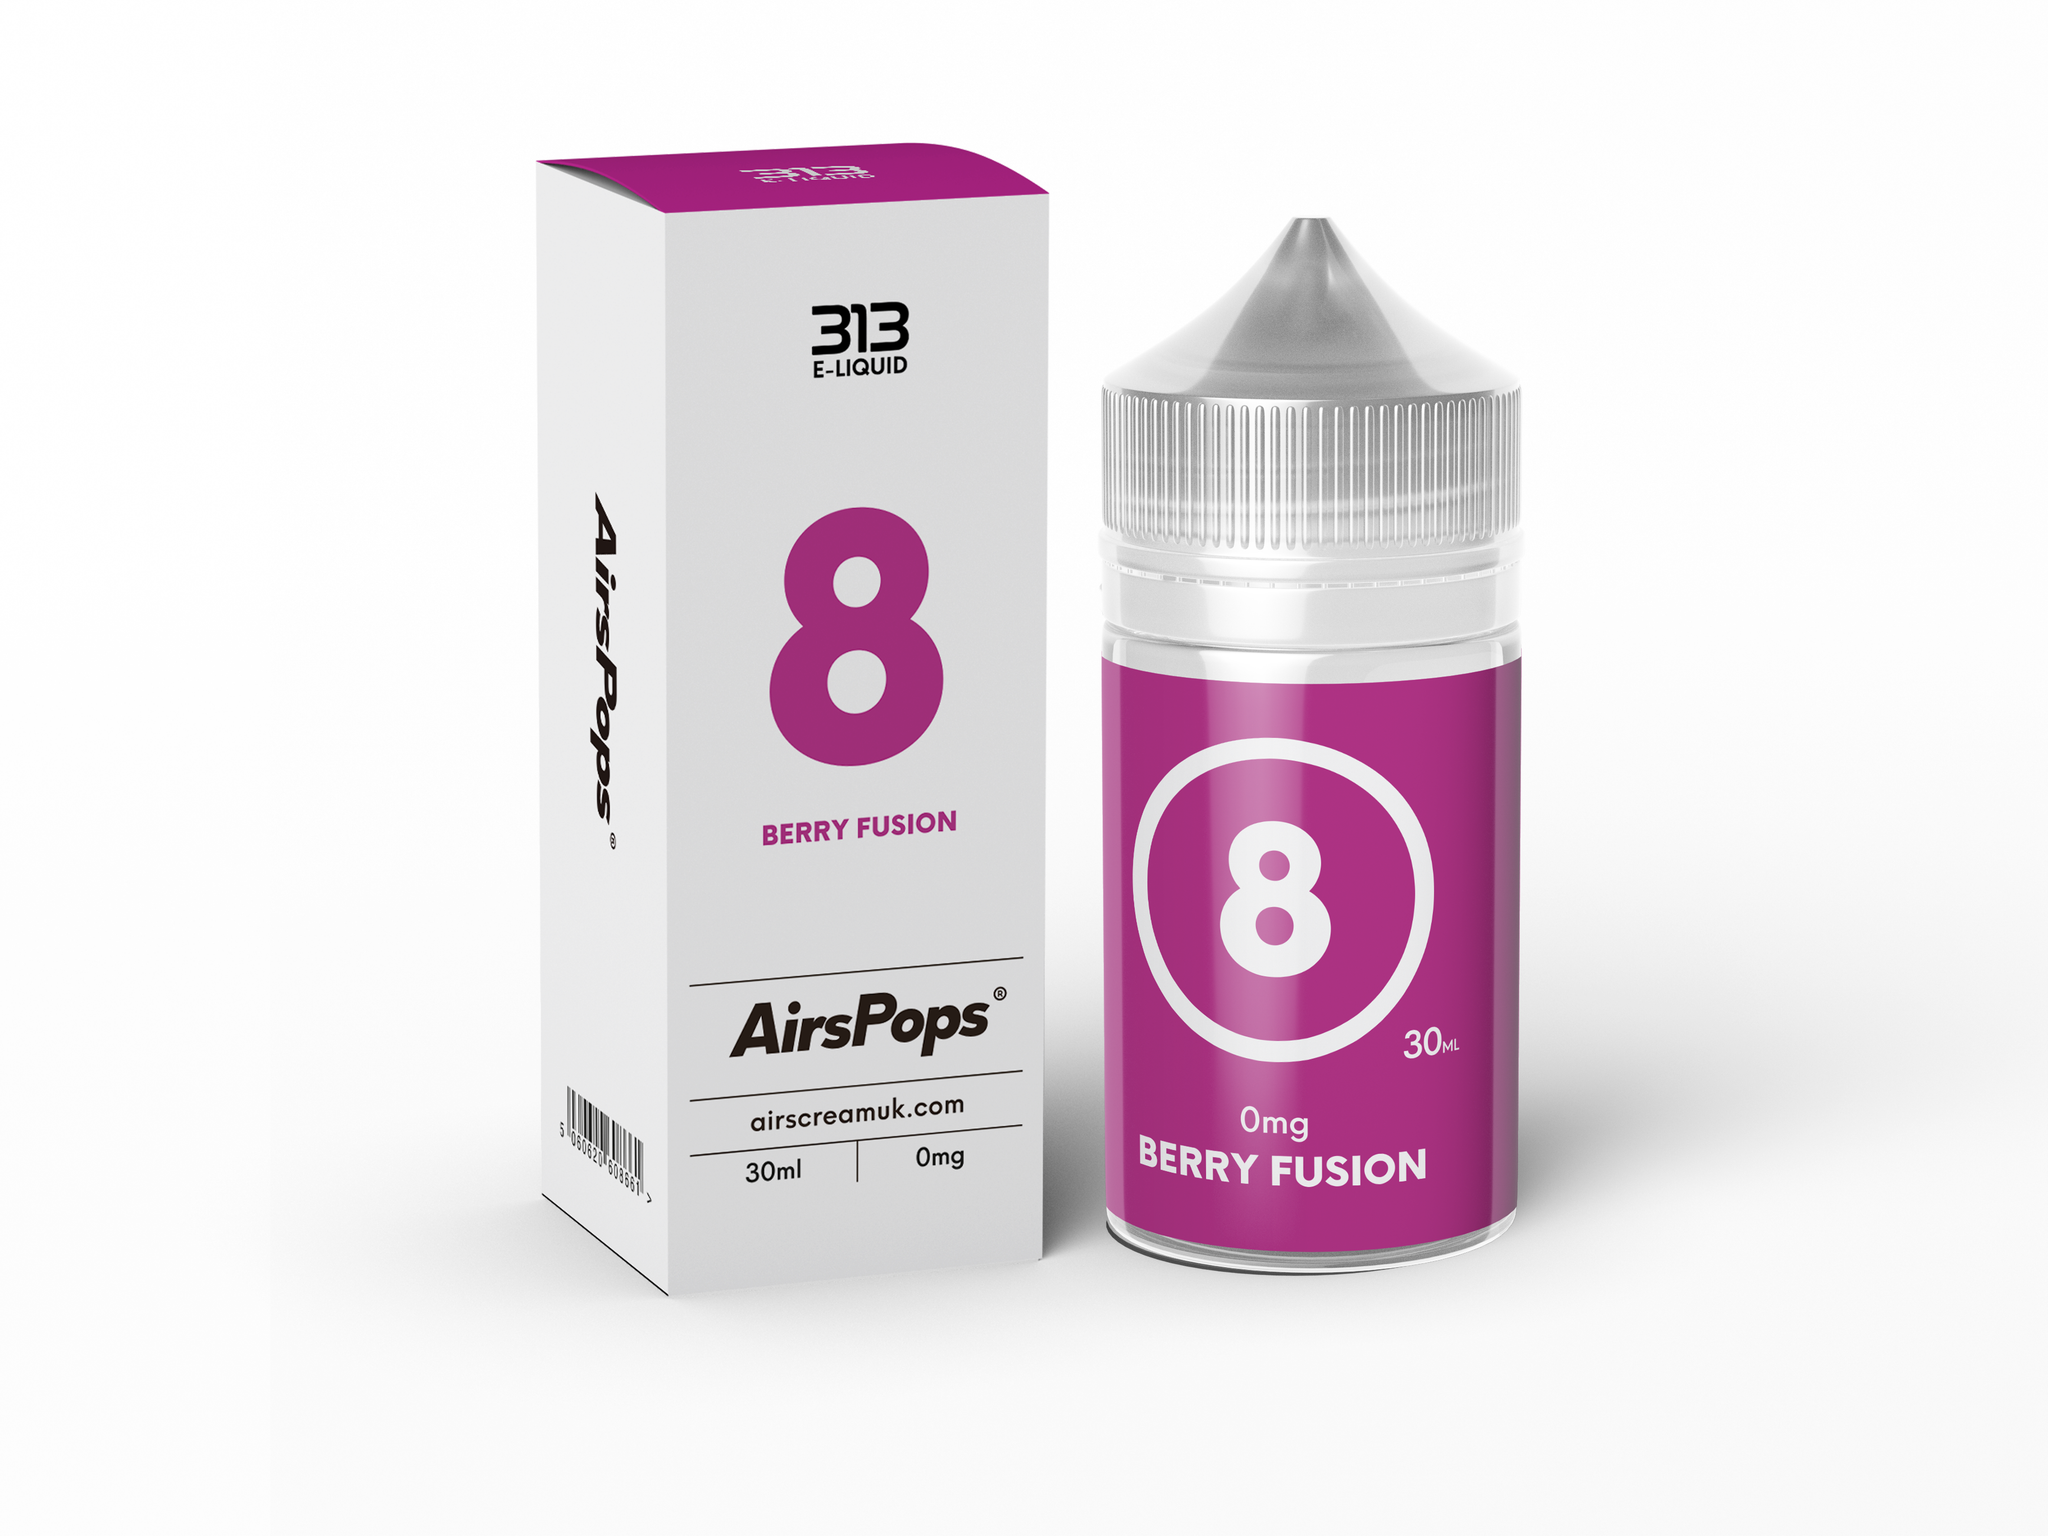 Berry Fusion by Airscream Airspops 313 30ml E-Liquid